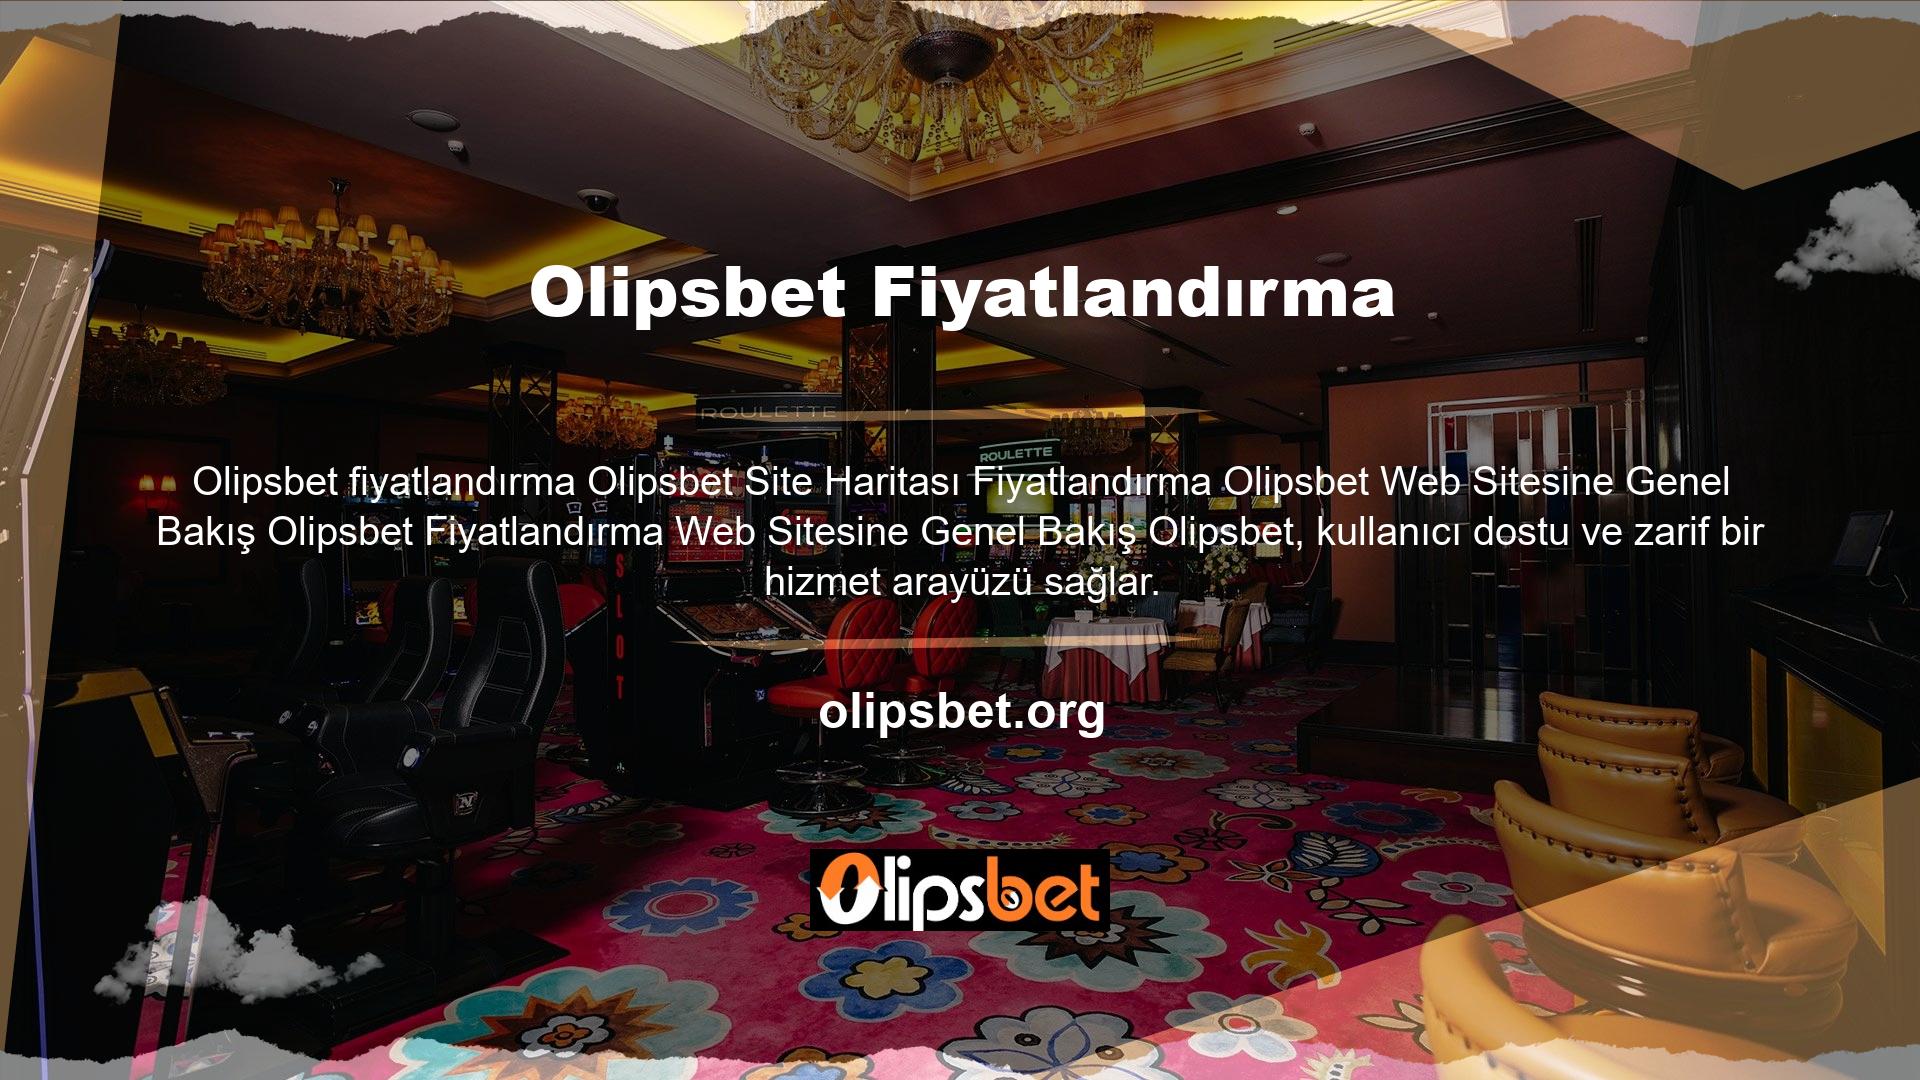 Olipsbet kategorisi, Olipsbet sitesinde bonus ve promosyon fırsatlarının paylaşıldığı en popüler kategoridir